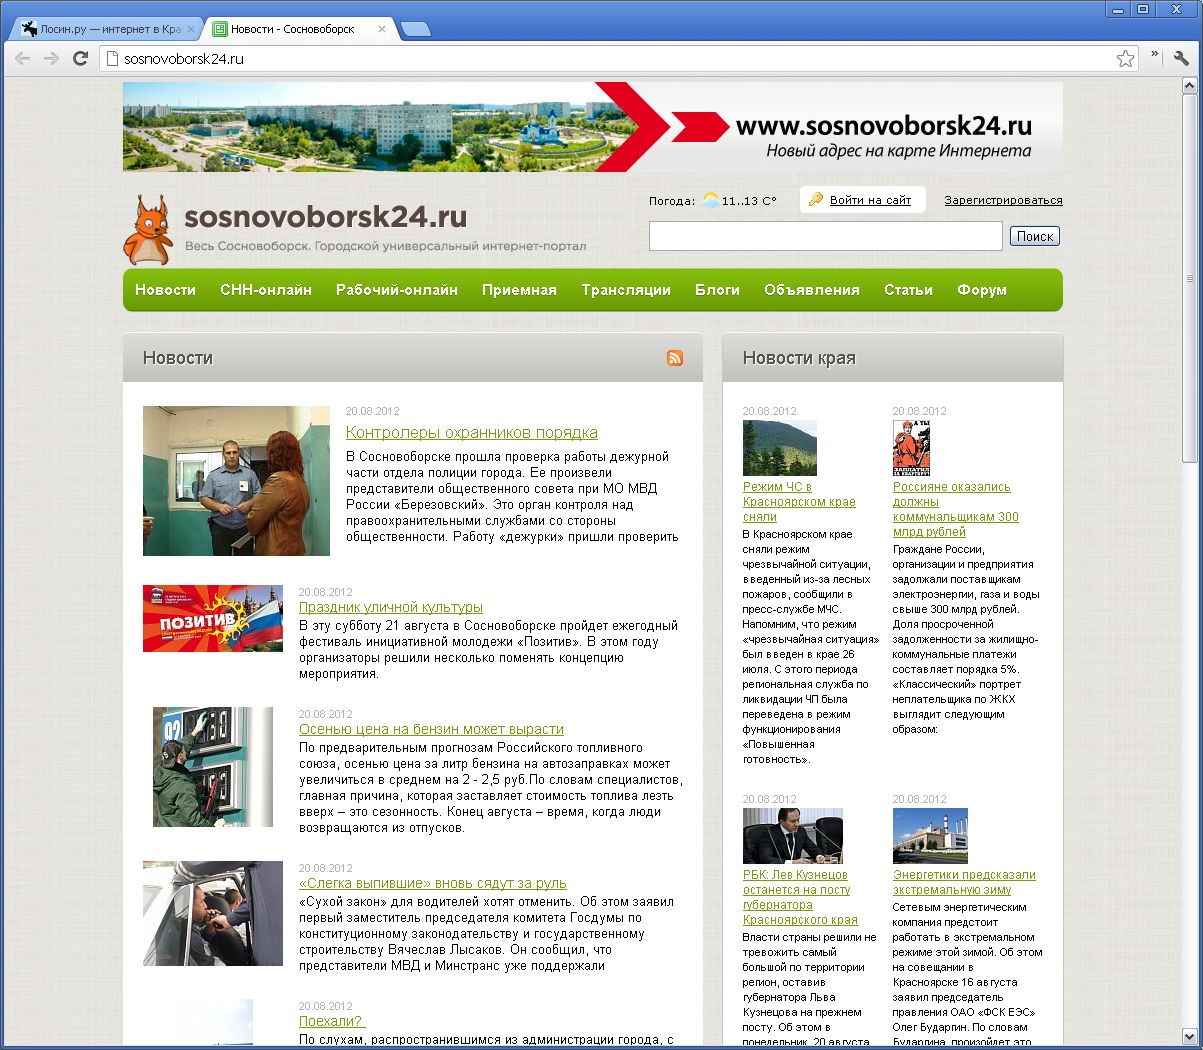 Сосновоборск вакансии. Сайт сосновоборский городской суд красноярского края